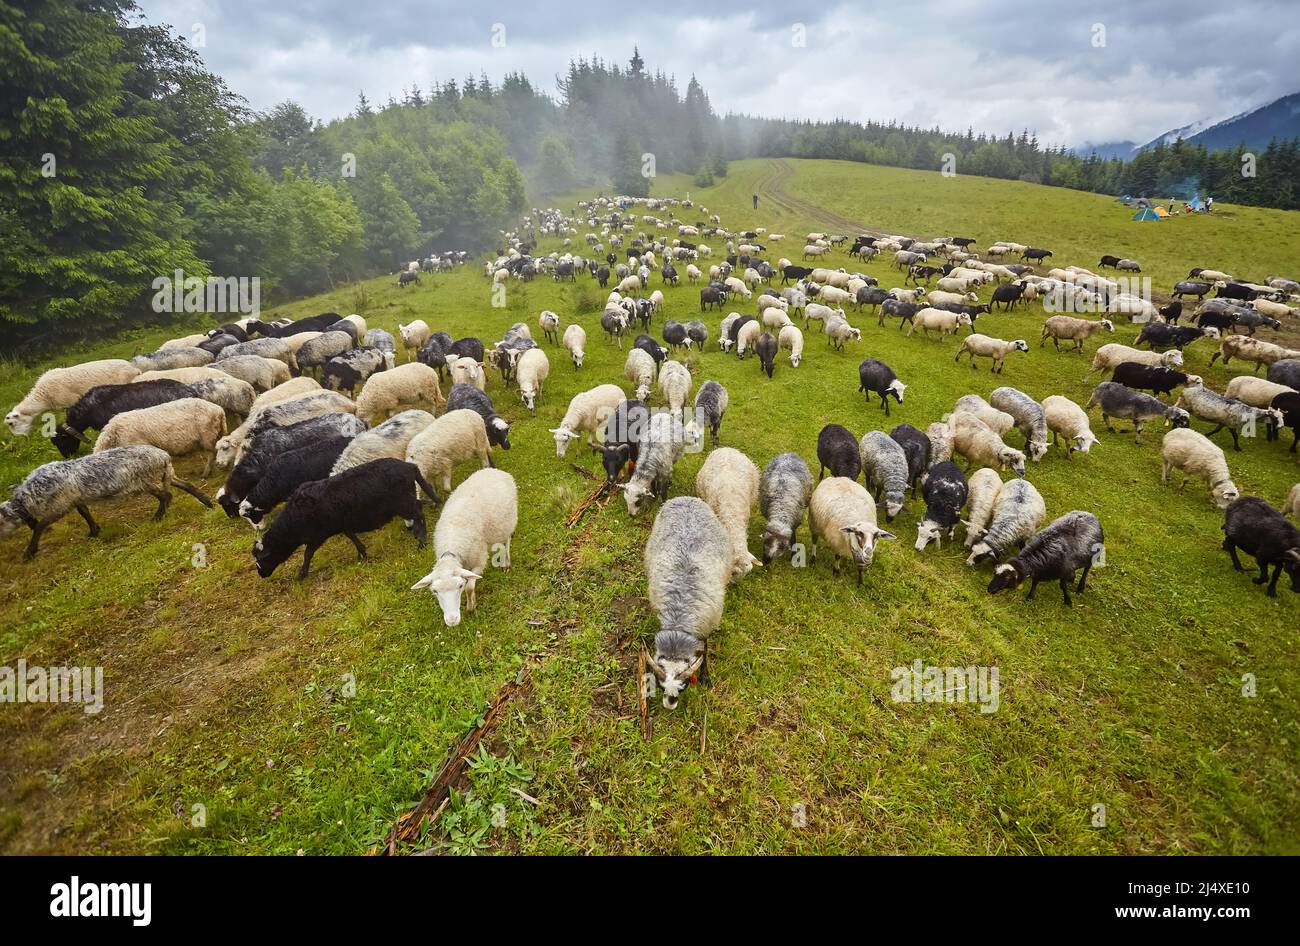 Panorama der Landschaft mit Schafherde grasen auf grünen Weiden in den Bergen. Junge weiße, blsck und braune Schafe grasen auf dem Hof. Stockfoto